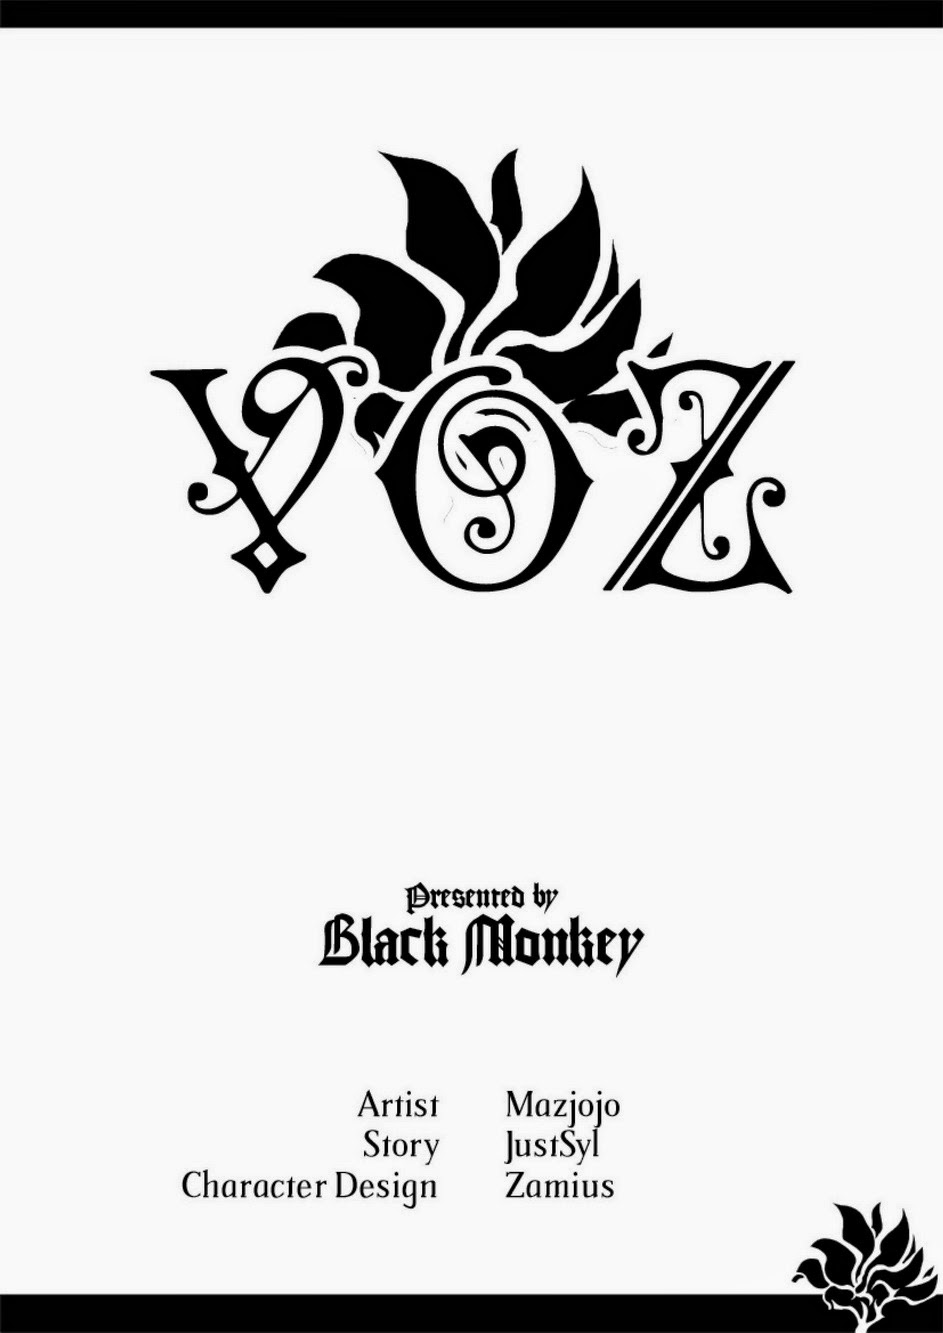 Black Monkey Pro Voz